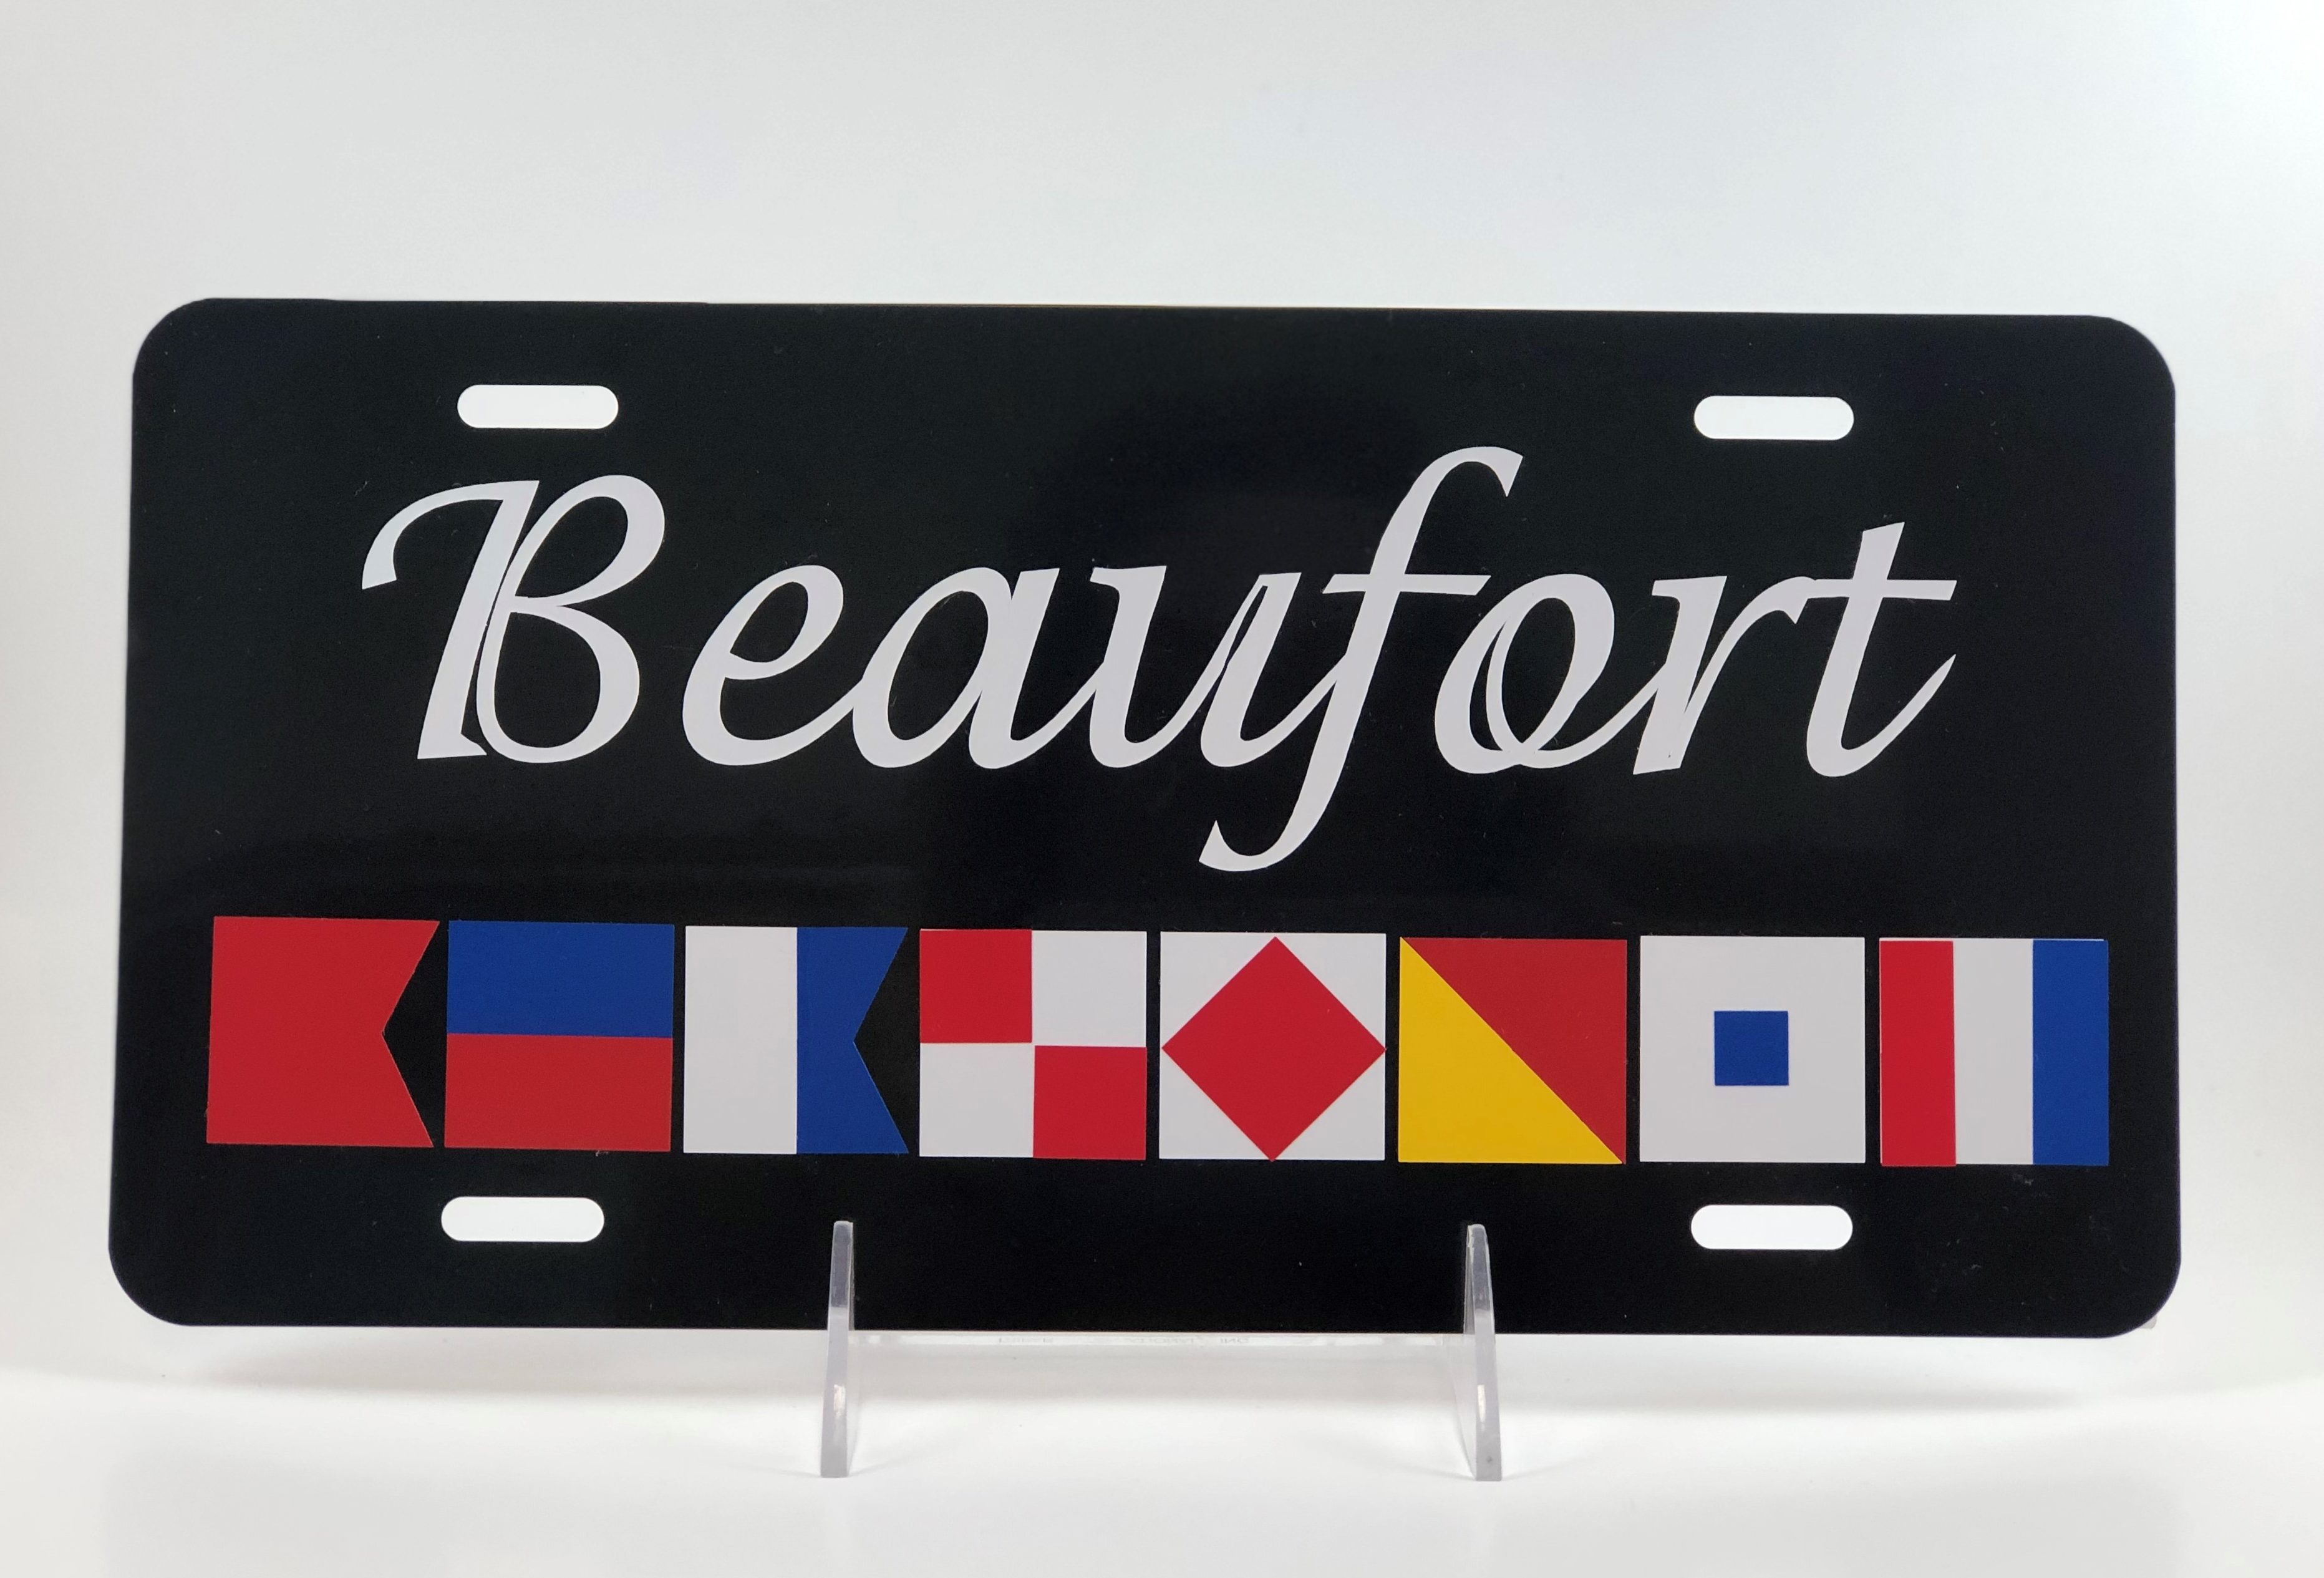 Beaufort Plate